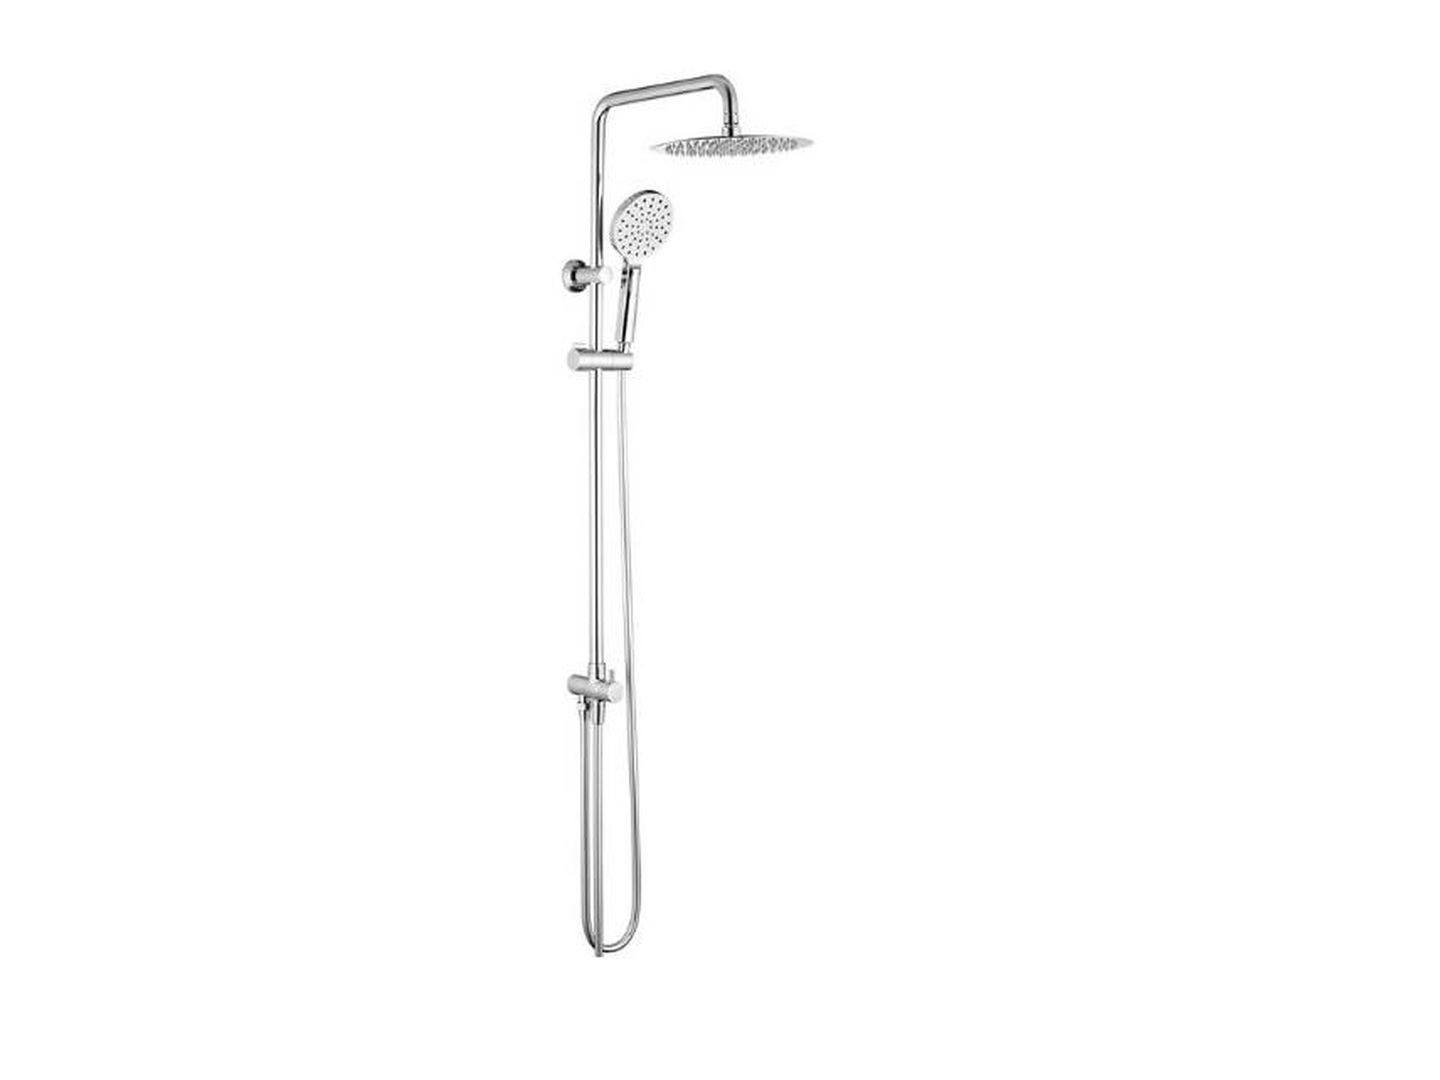 Accesorios de baño para el hogar, soporte de ducha, barra de pared de  soporte fija, barra de ducha ajustable, soporte de ducha de mano